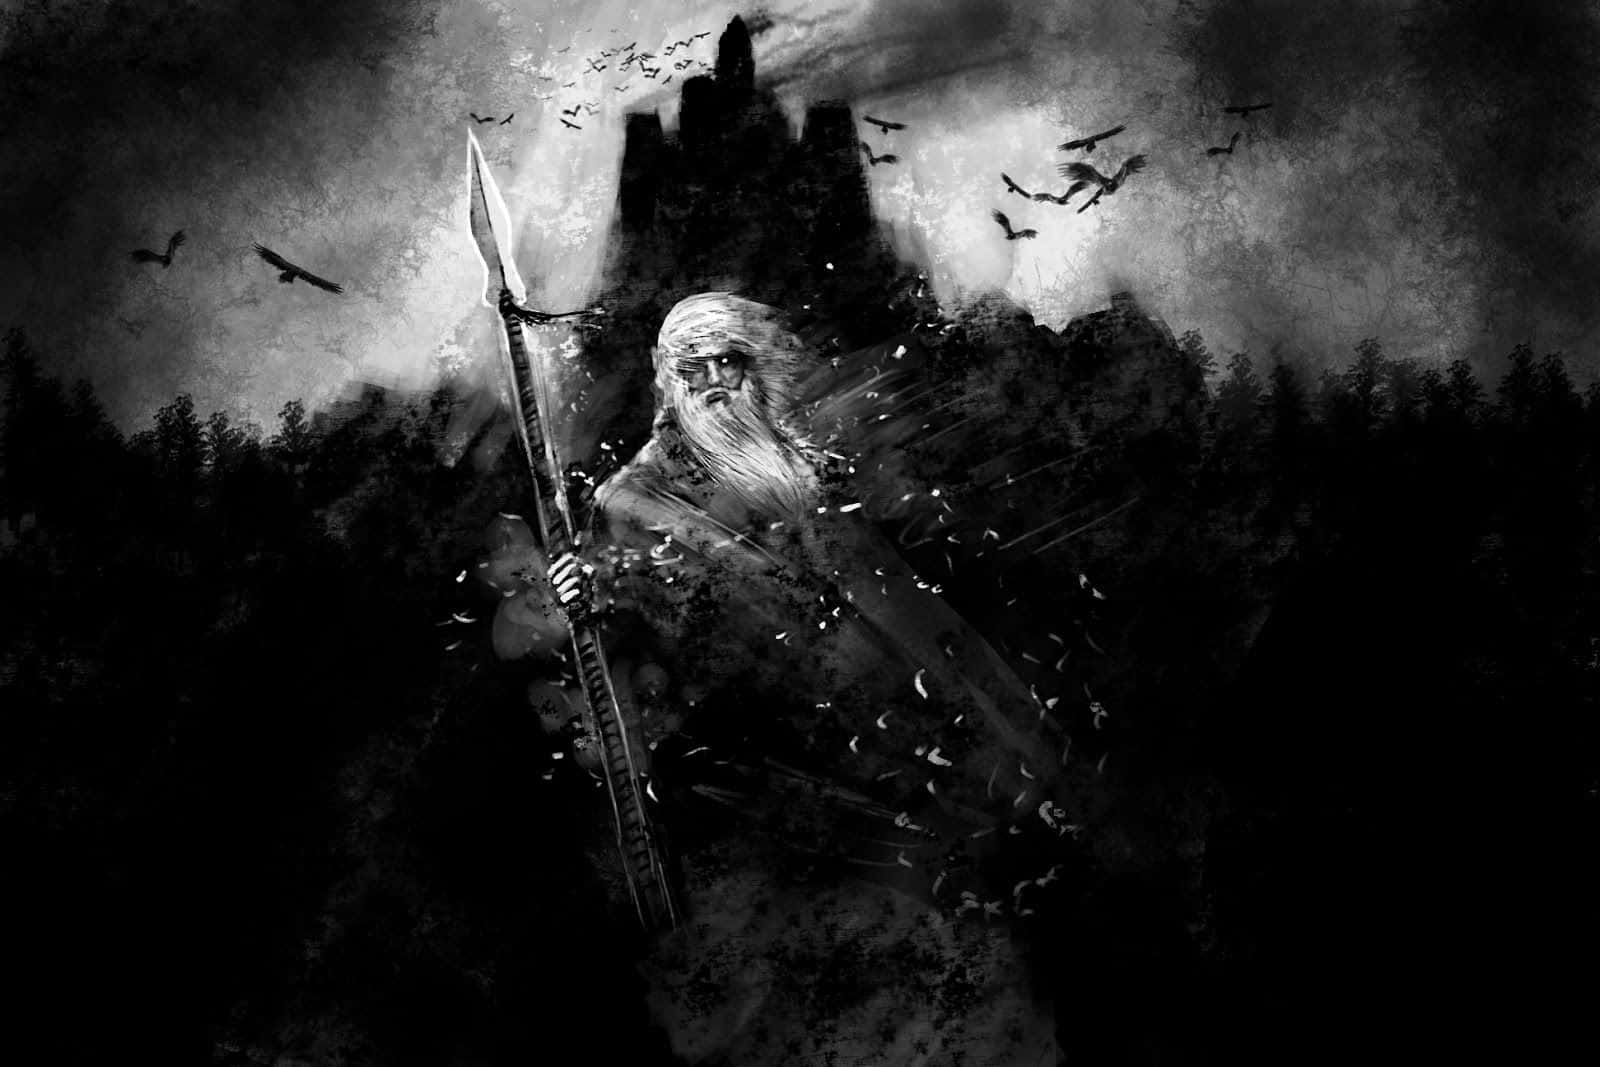 Billede af Odin og Sleipnir, Ride af Asgard skyrim som et baggrundsbillede. Wallpaper